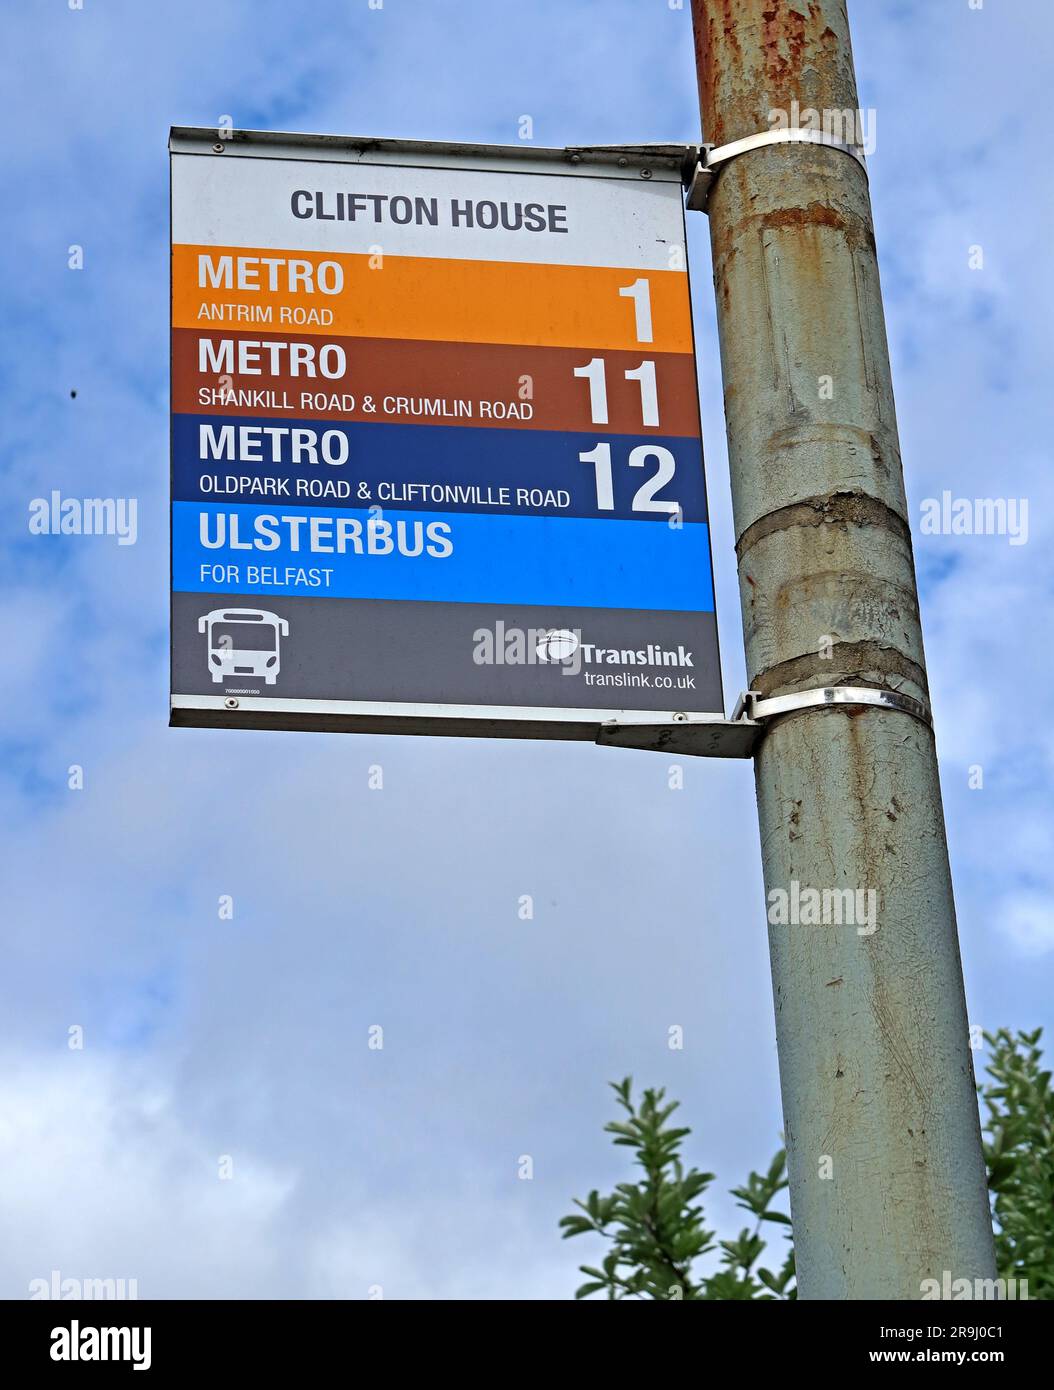 Arrêt de bus Clifton House, sur Clifton Road, transports en commun en direction de la ville et du sud, métro, Ulsterbus, Belfast, County Antrim, Irlande du Nord, Royaume-Uni, BT13 1AA Banque D'Images